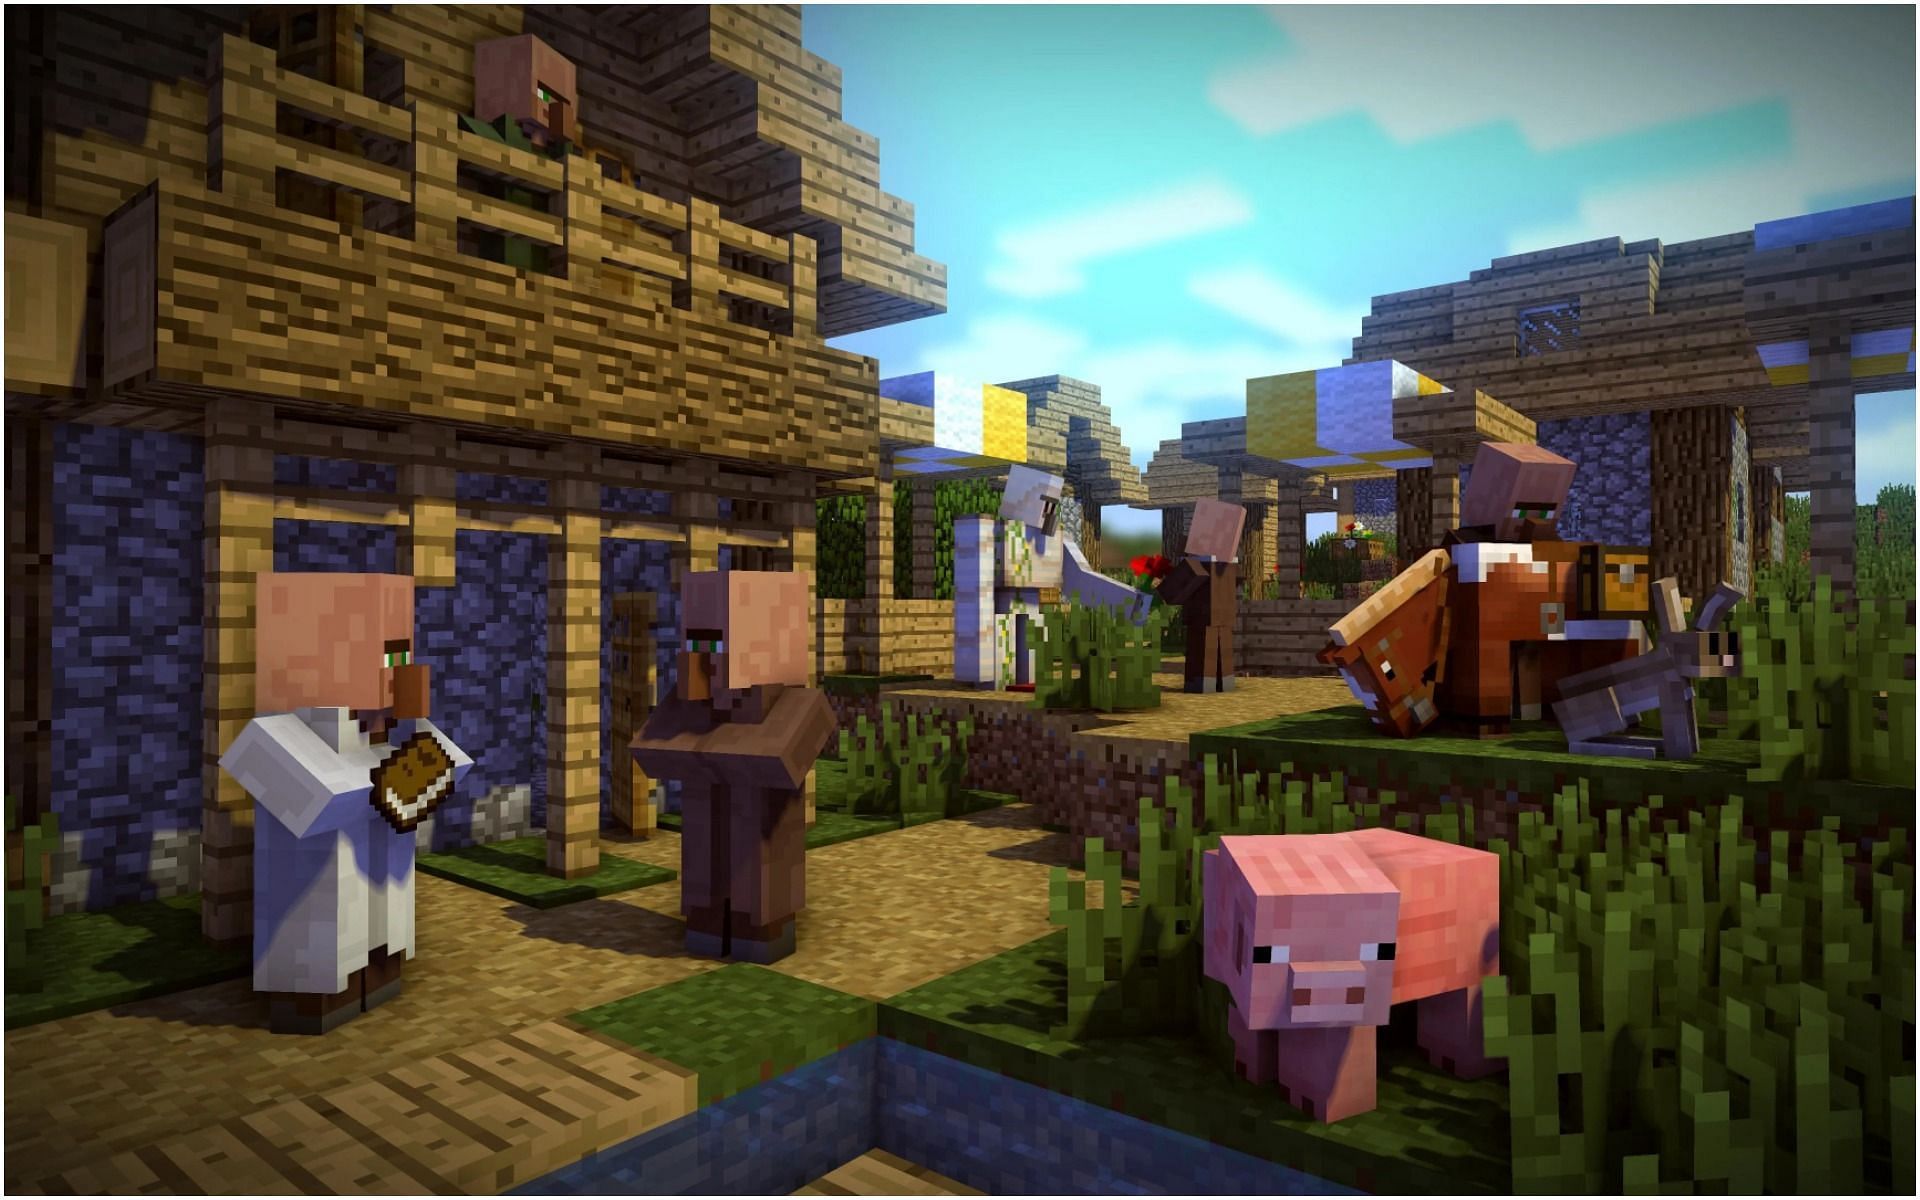 Villagers in Minecraft (Image via Minecraft)